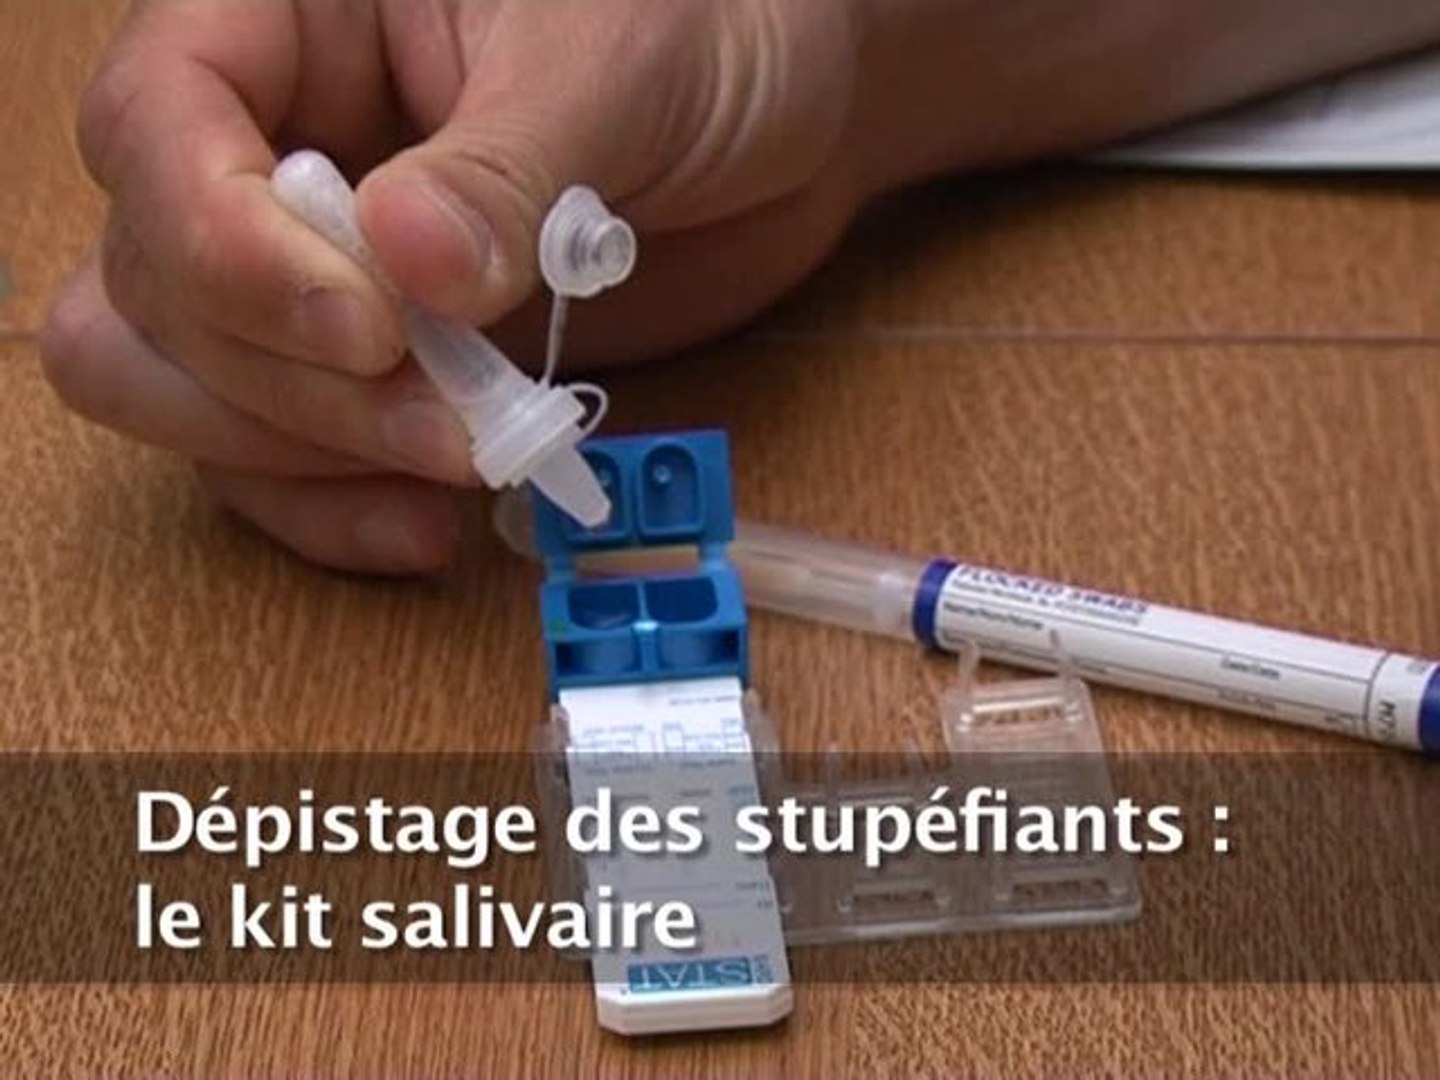 Conduite sous l'emprise de stupéfiants : Nouveaux kits de dépistage  salivaire et contrôles renforcés